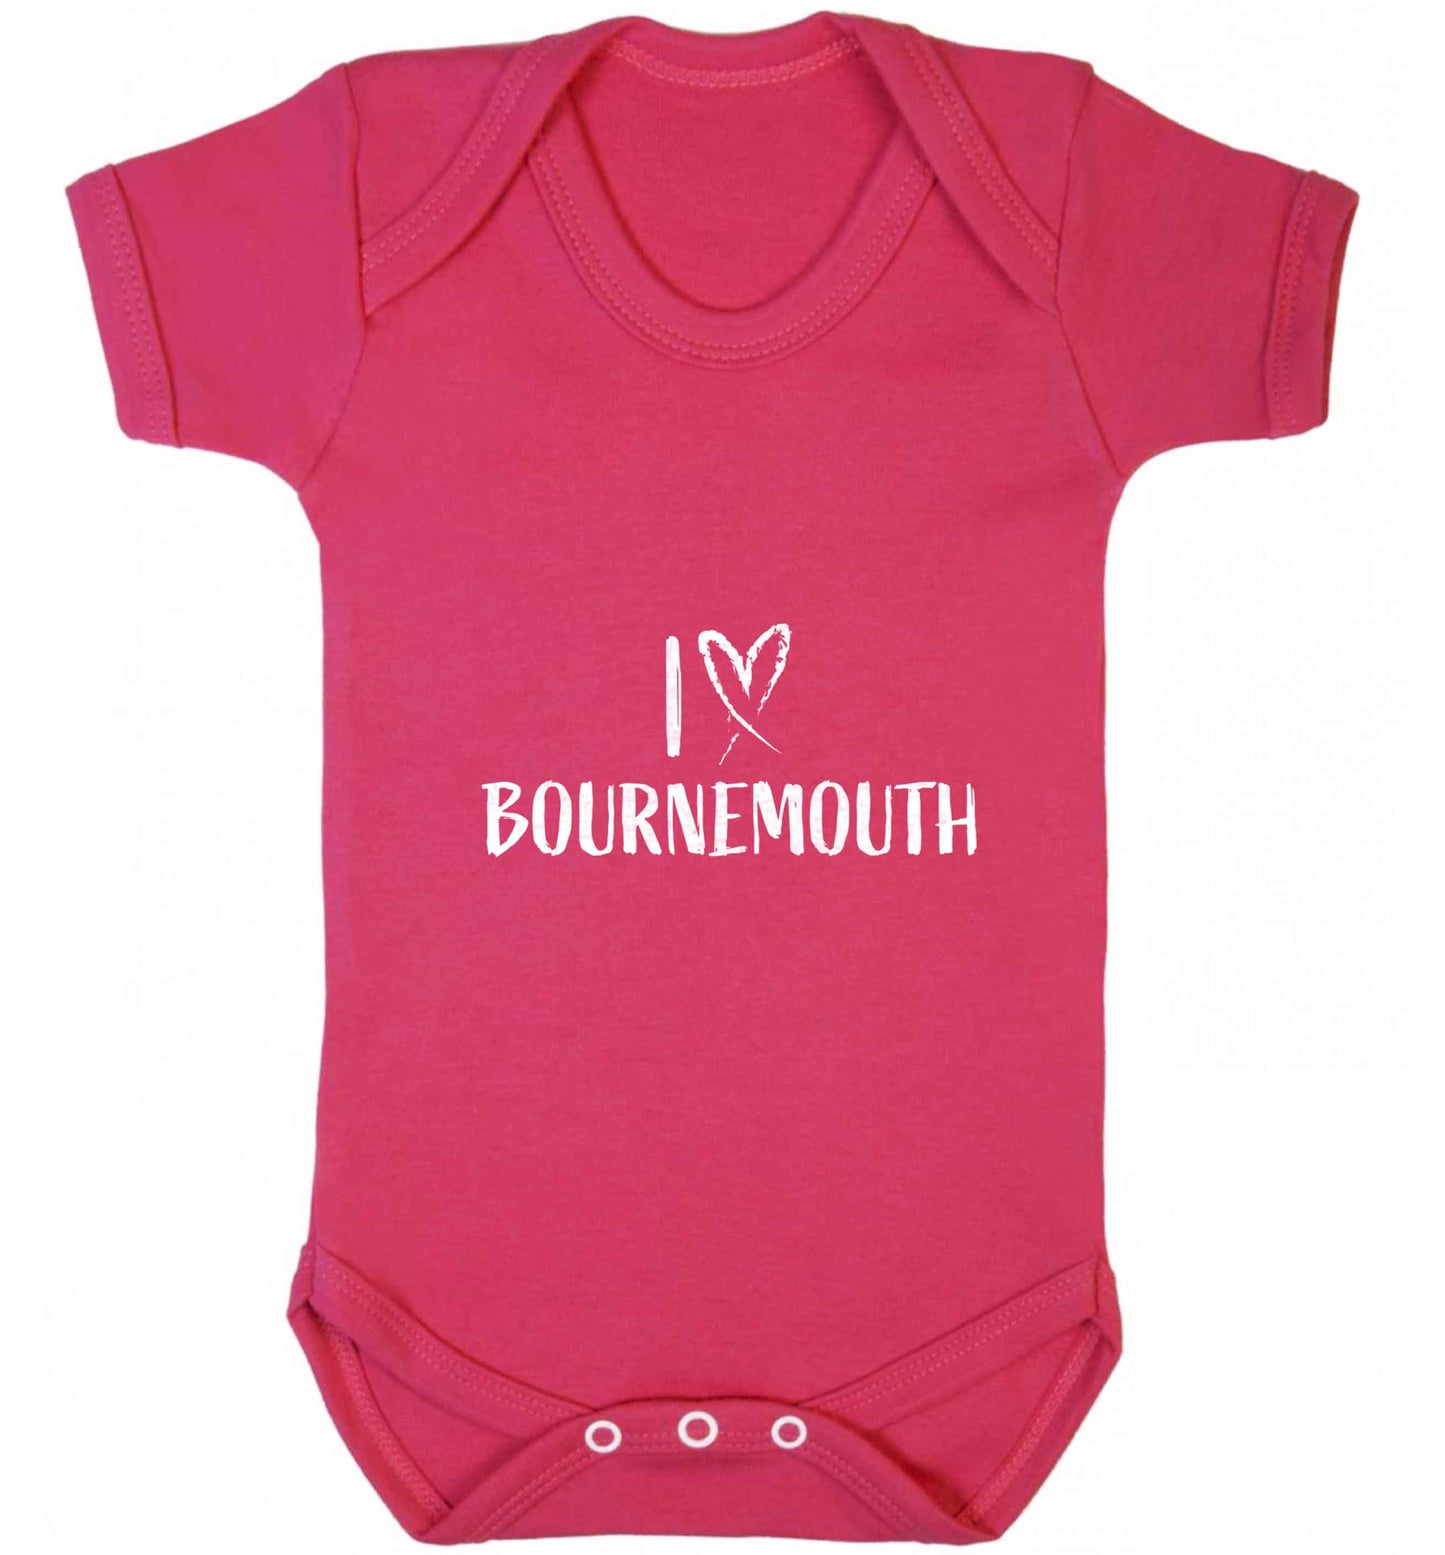 I love Bournemouth baby vest dark pink 18-24 months